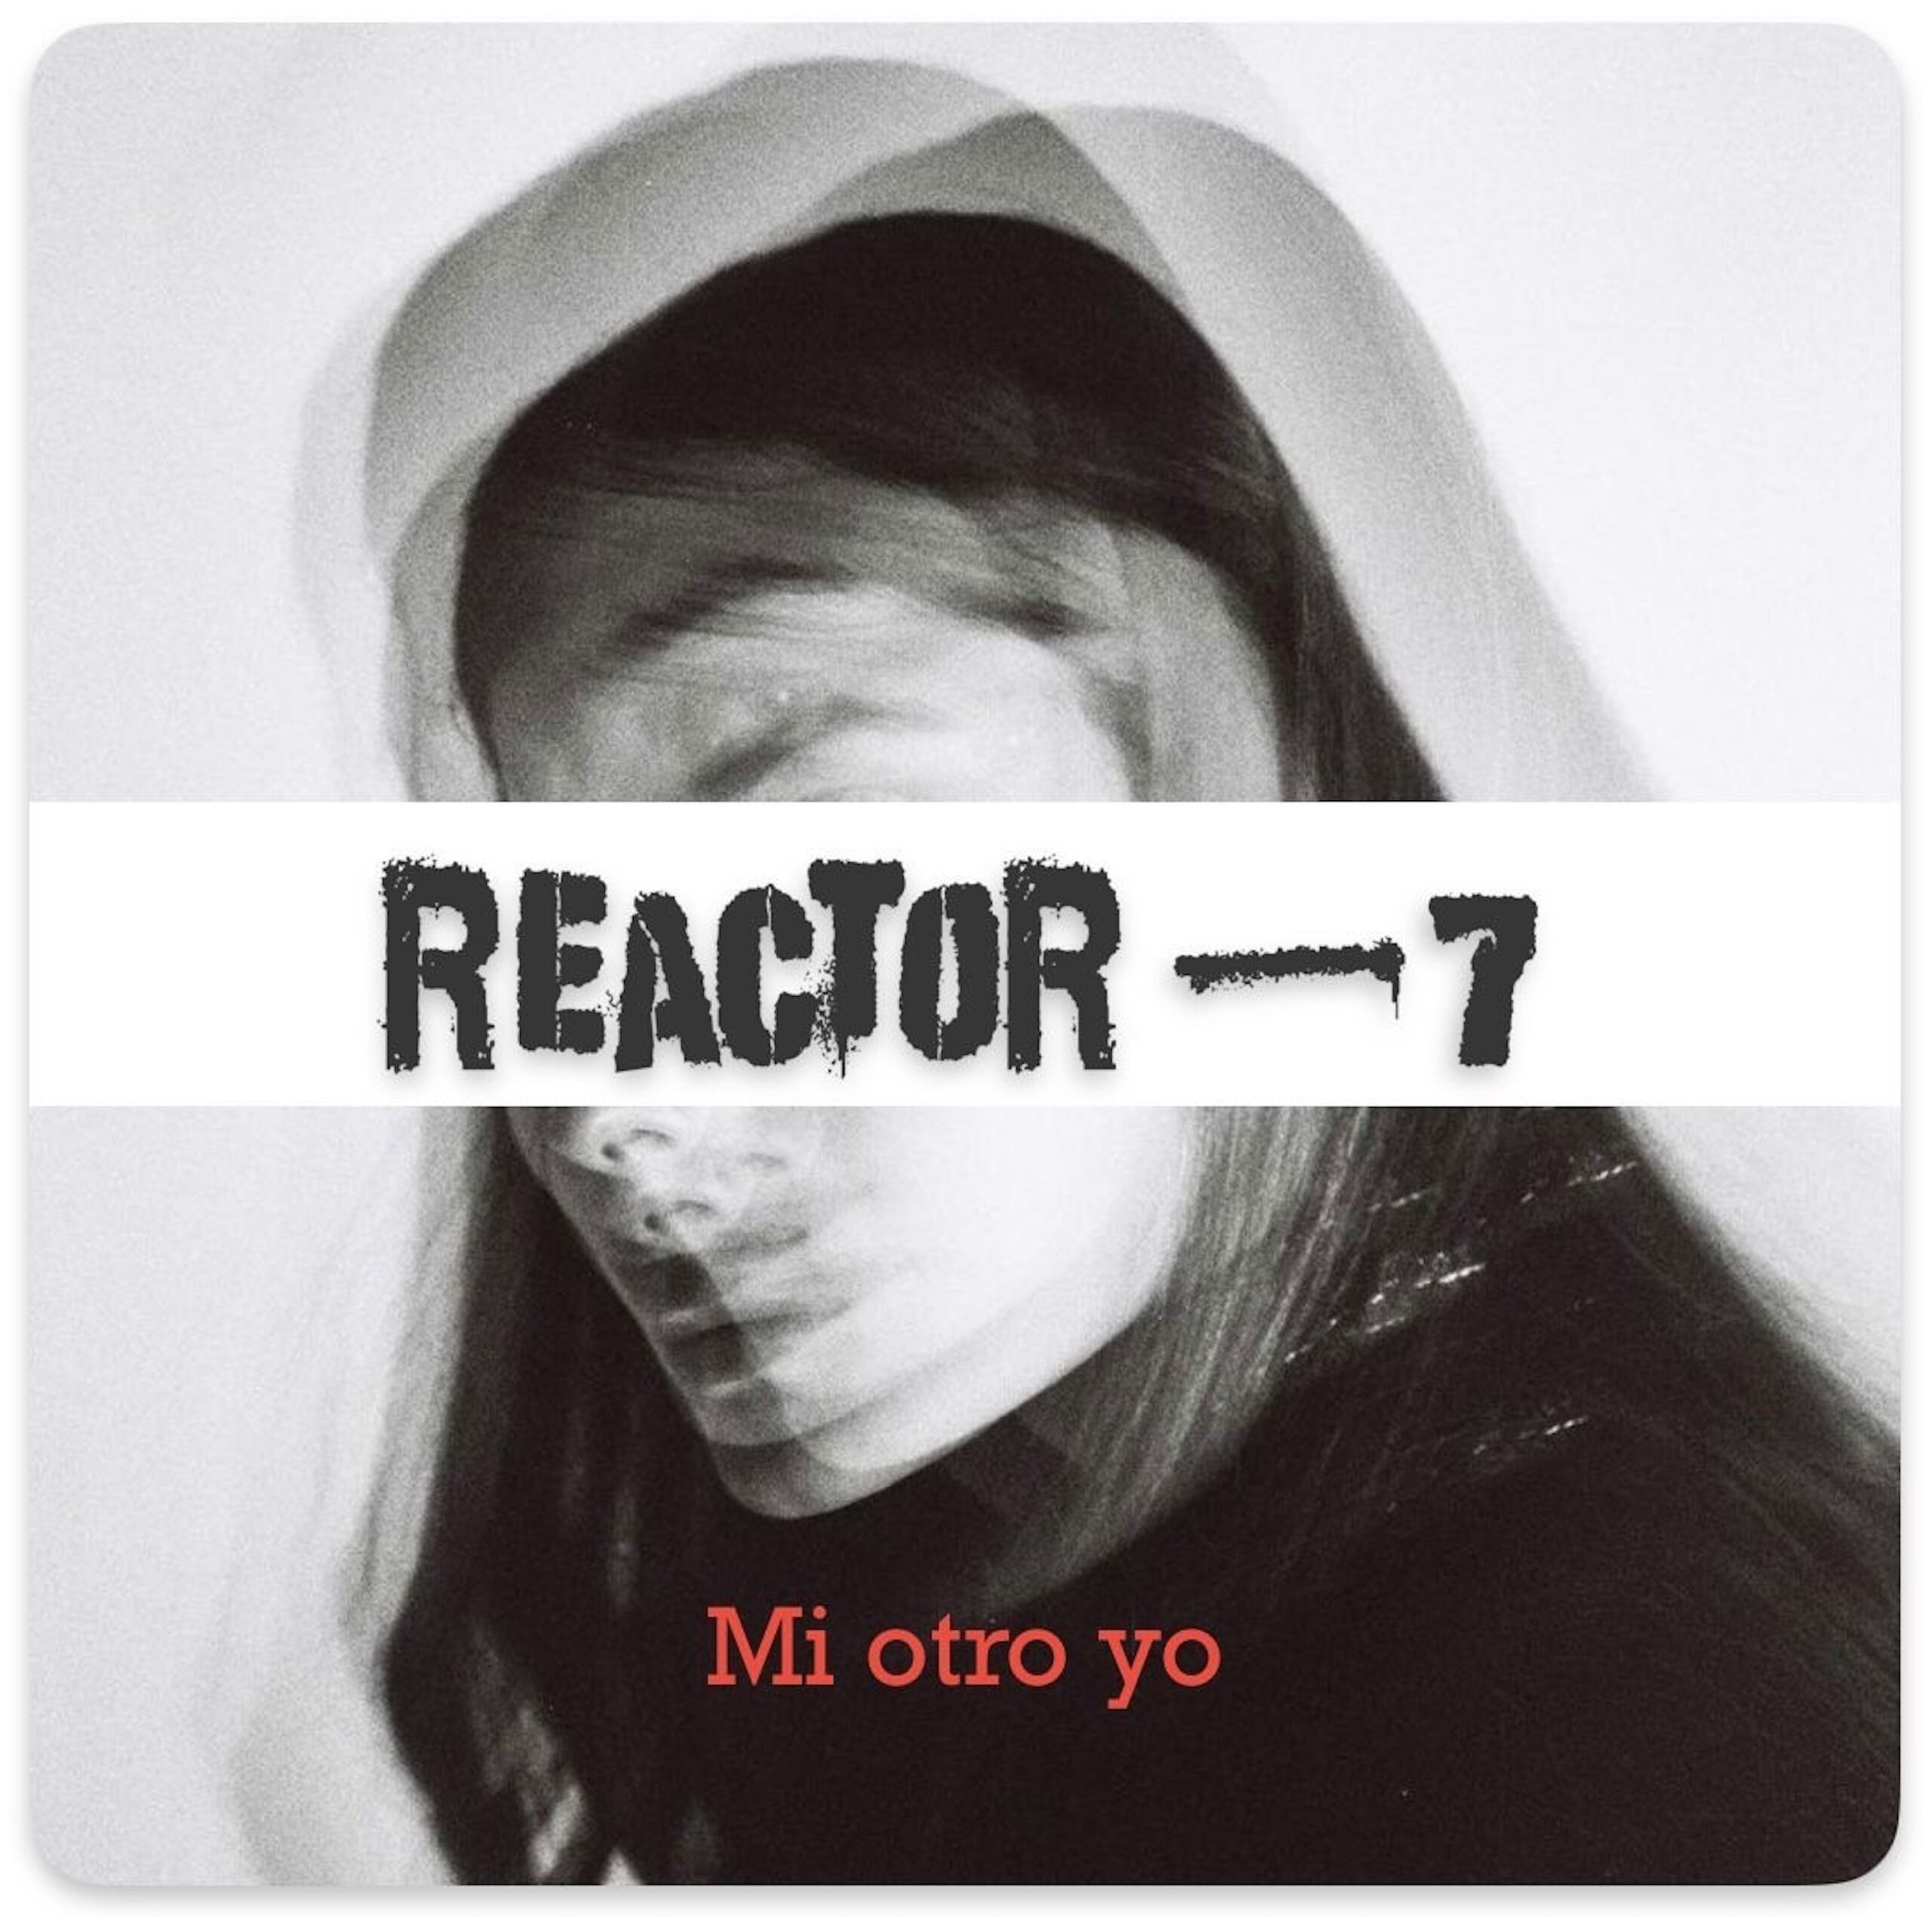  Reactor-7: “Mi otro yo”, un álbum que te invita a liberar tu voz interior